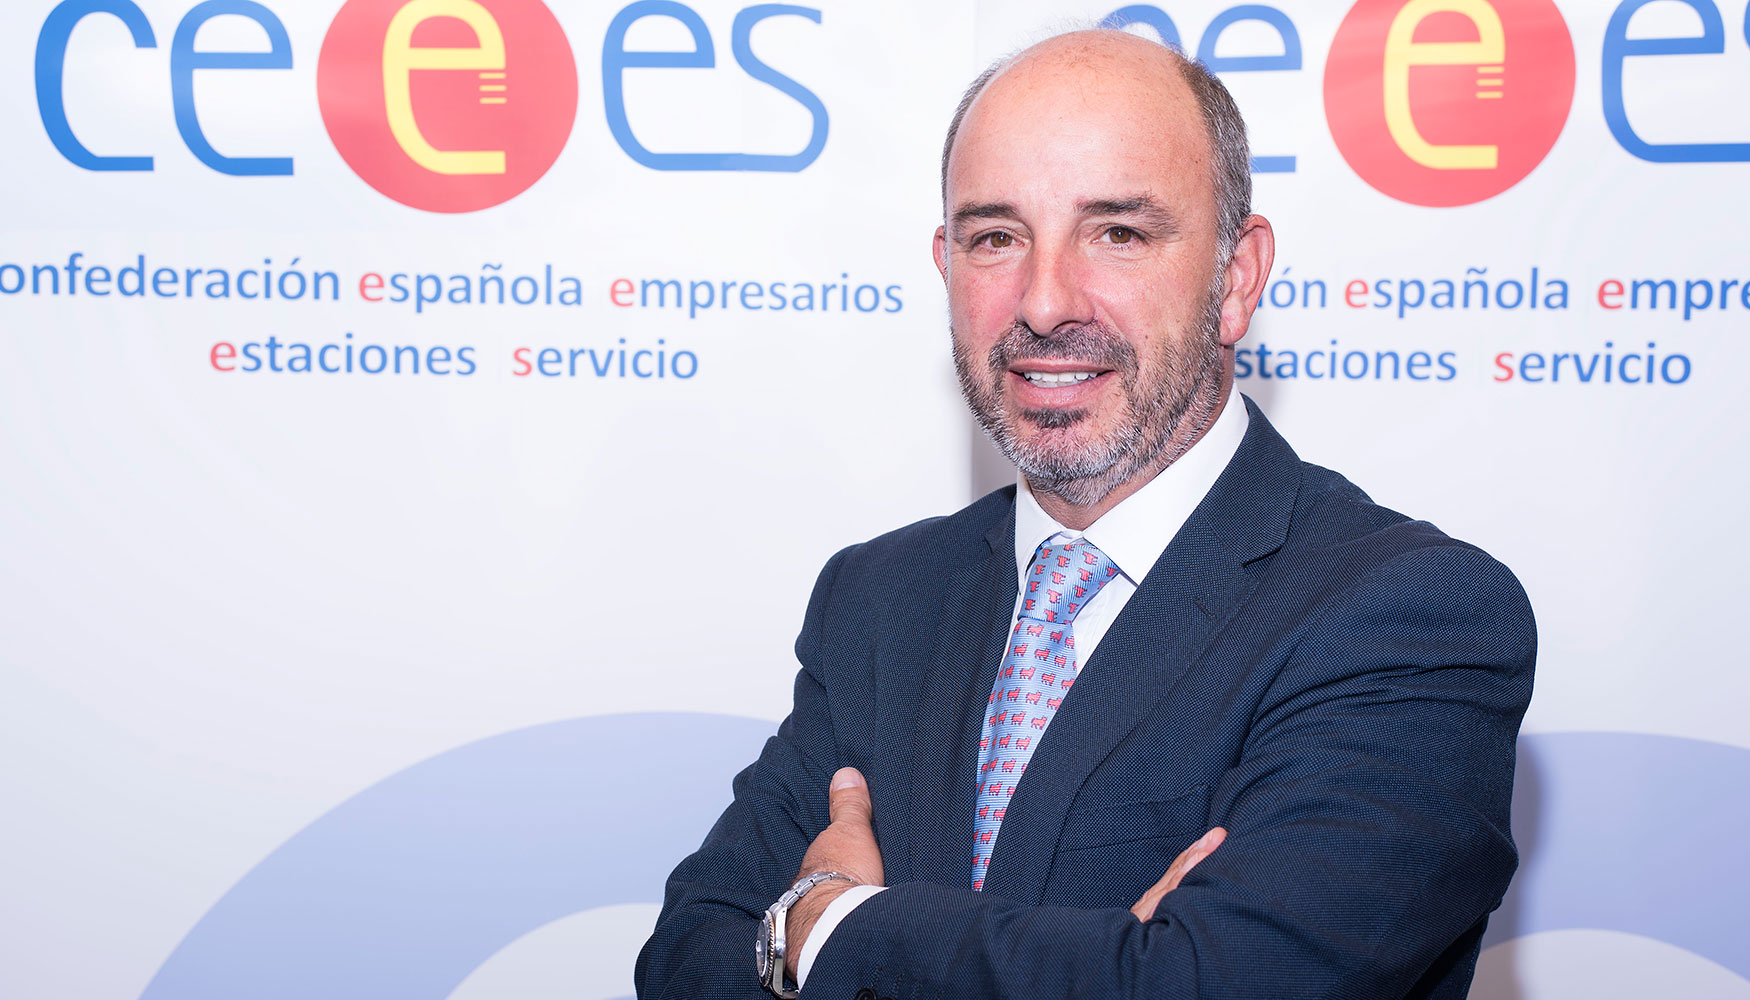 El presidente de la Confederacin Espaola de Empresarios de Estaciones de Servicio, CEEES, Jorge de Benito